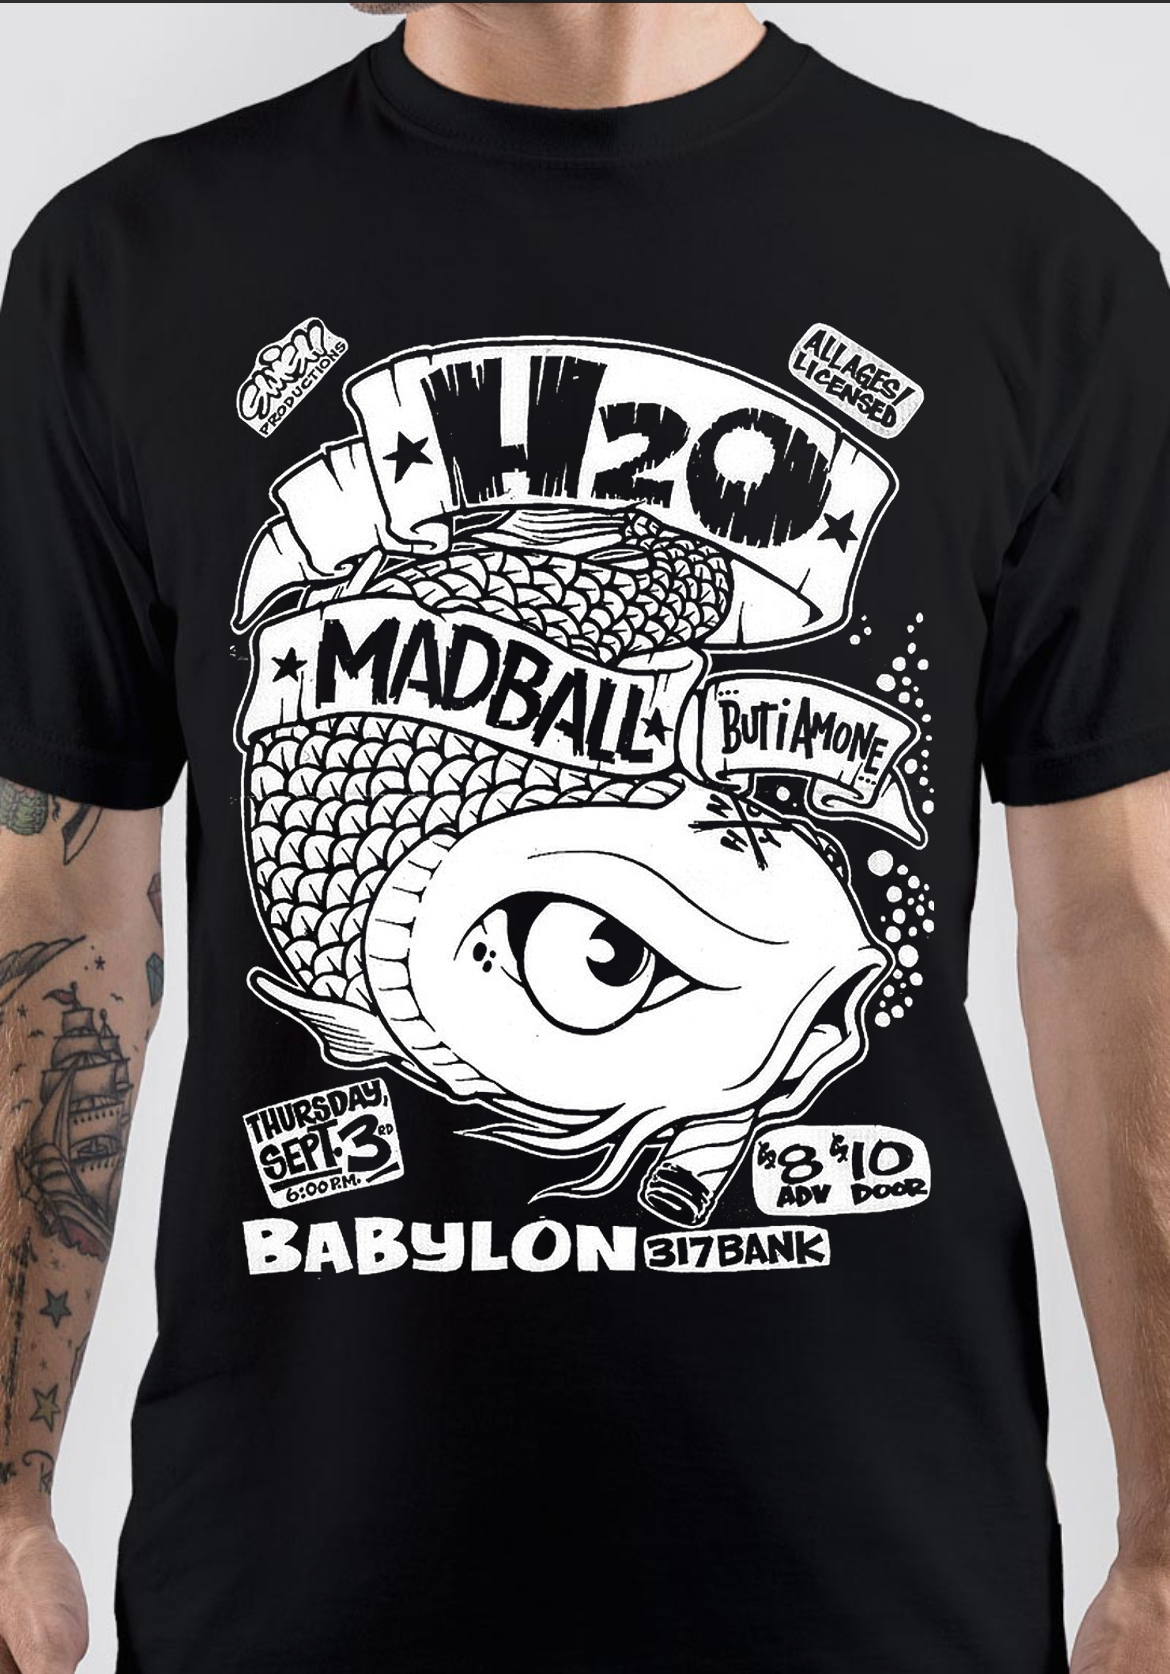 Madball T-Shirt And Merchandise